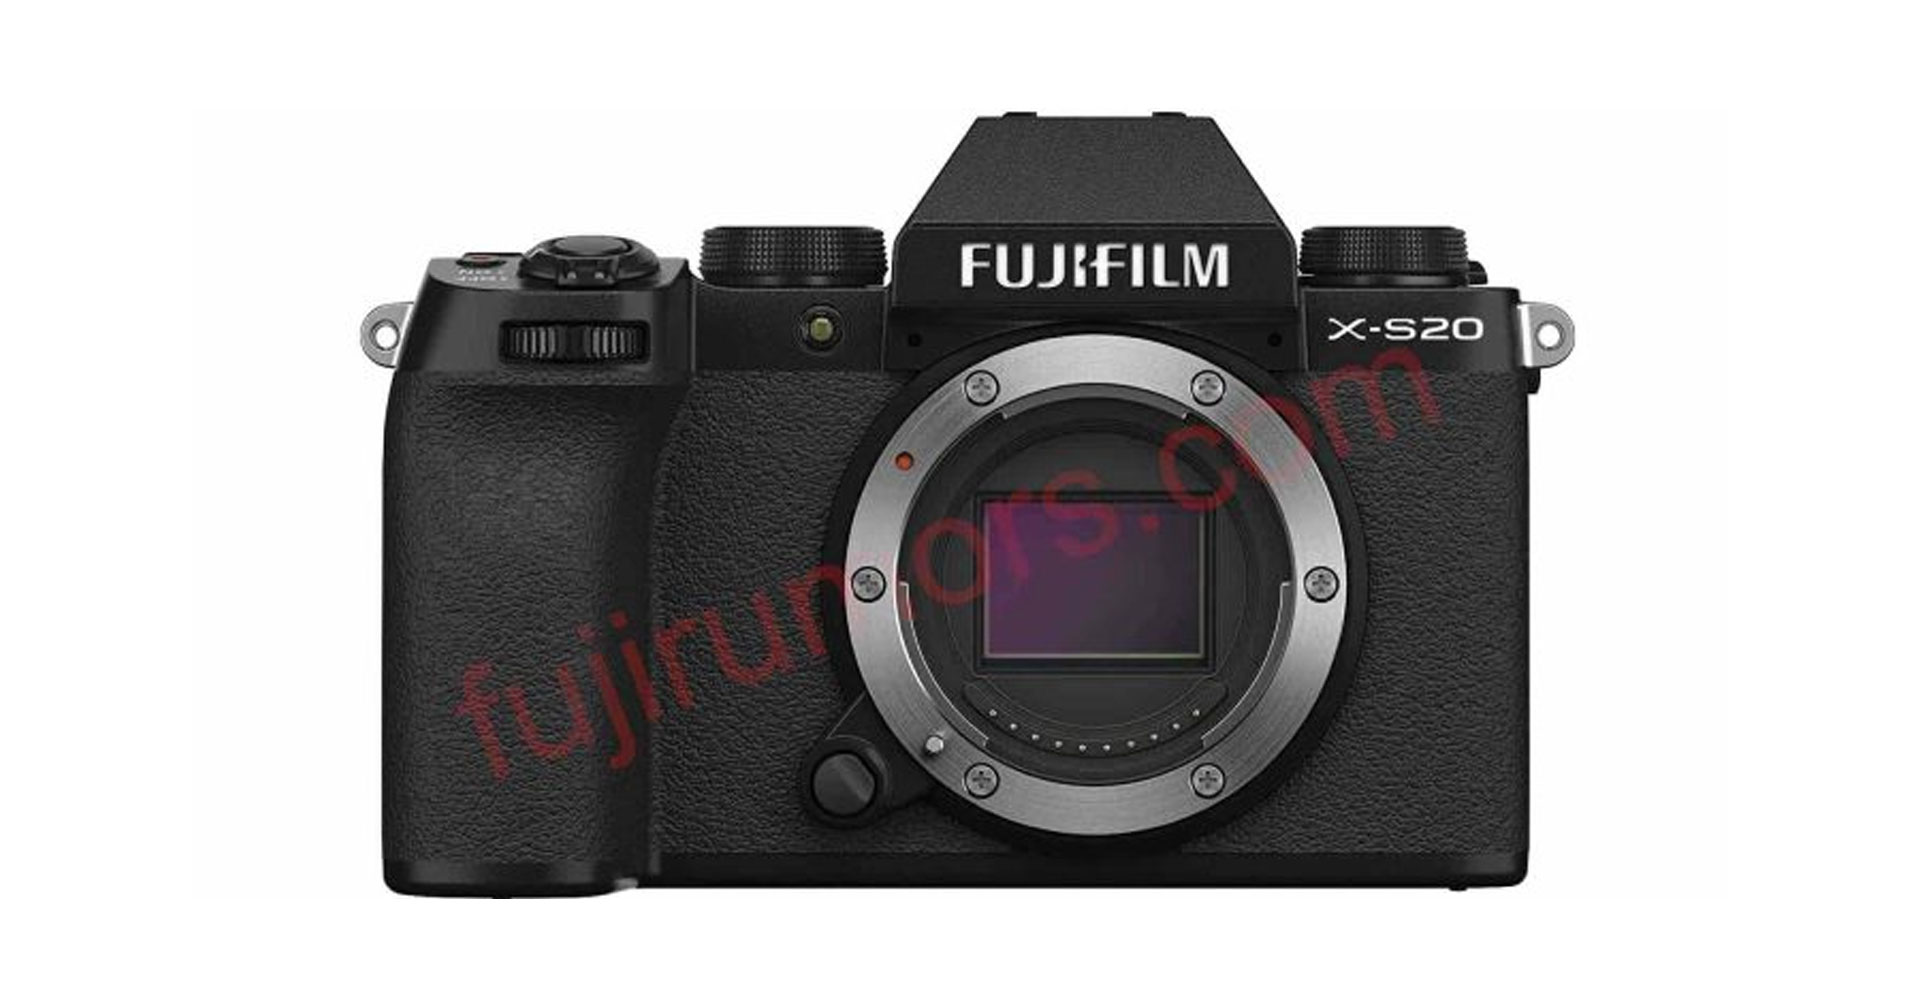 มาแน่! FUJIFILM X-S20 จะเป็นกล้องรุ่นแรกที่ได้เปิดตัวในปีนี้